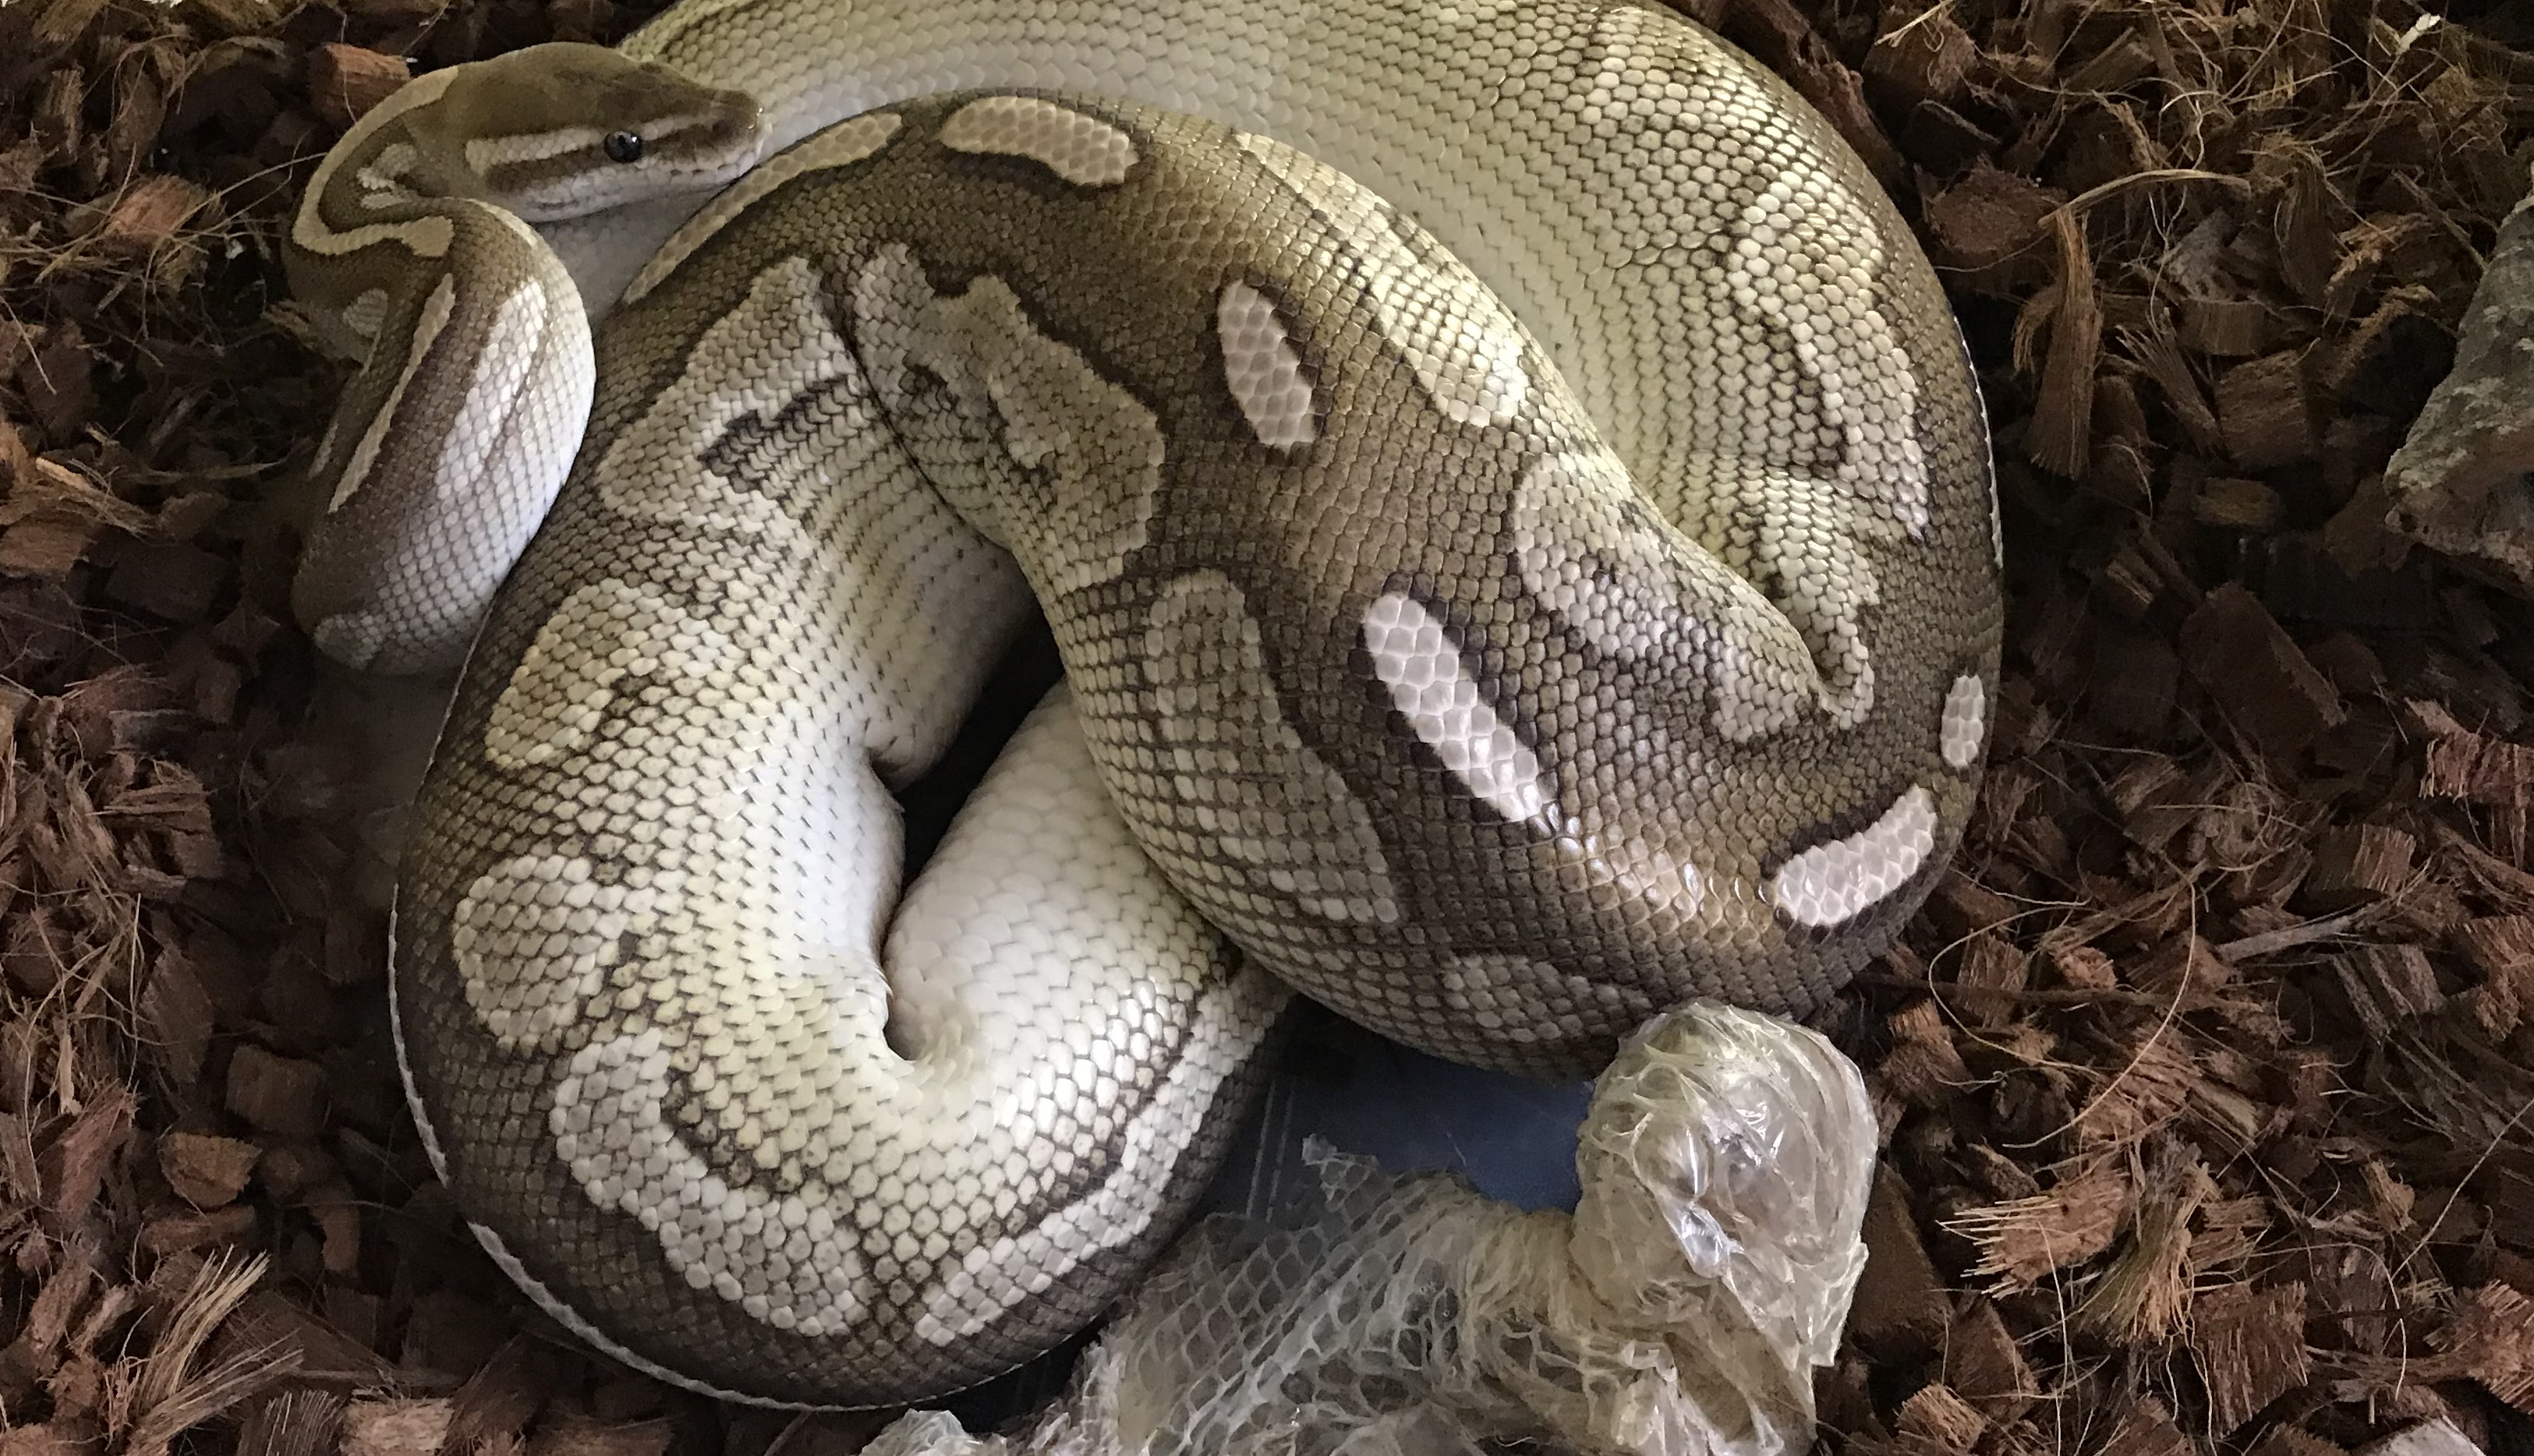 Royal Python after shedding its skin